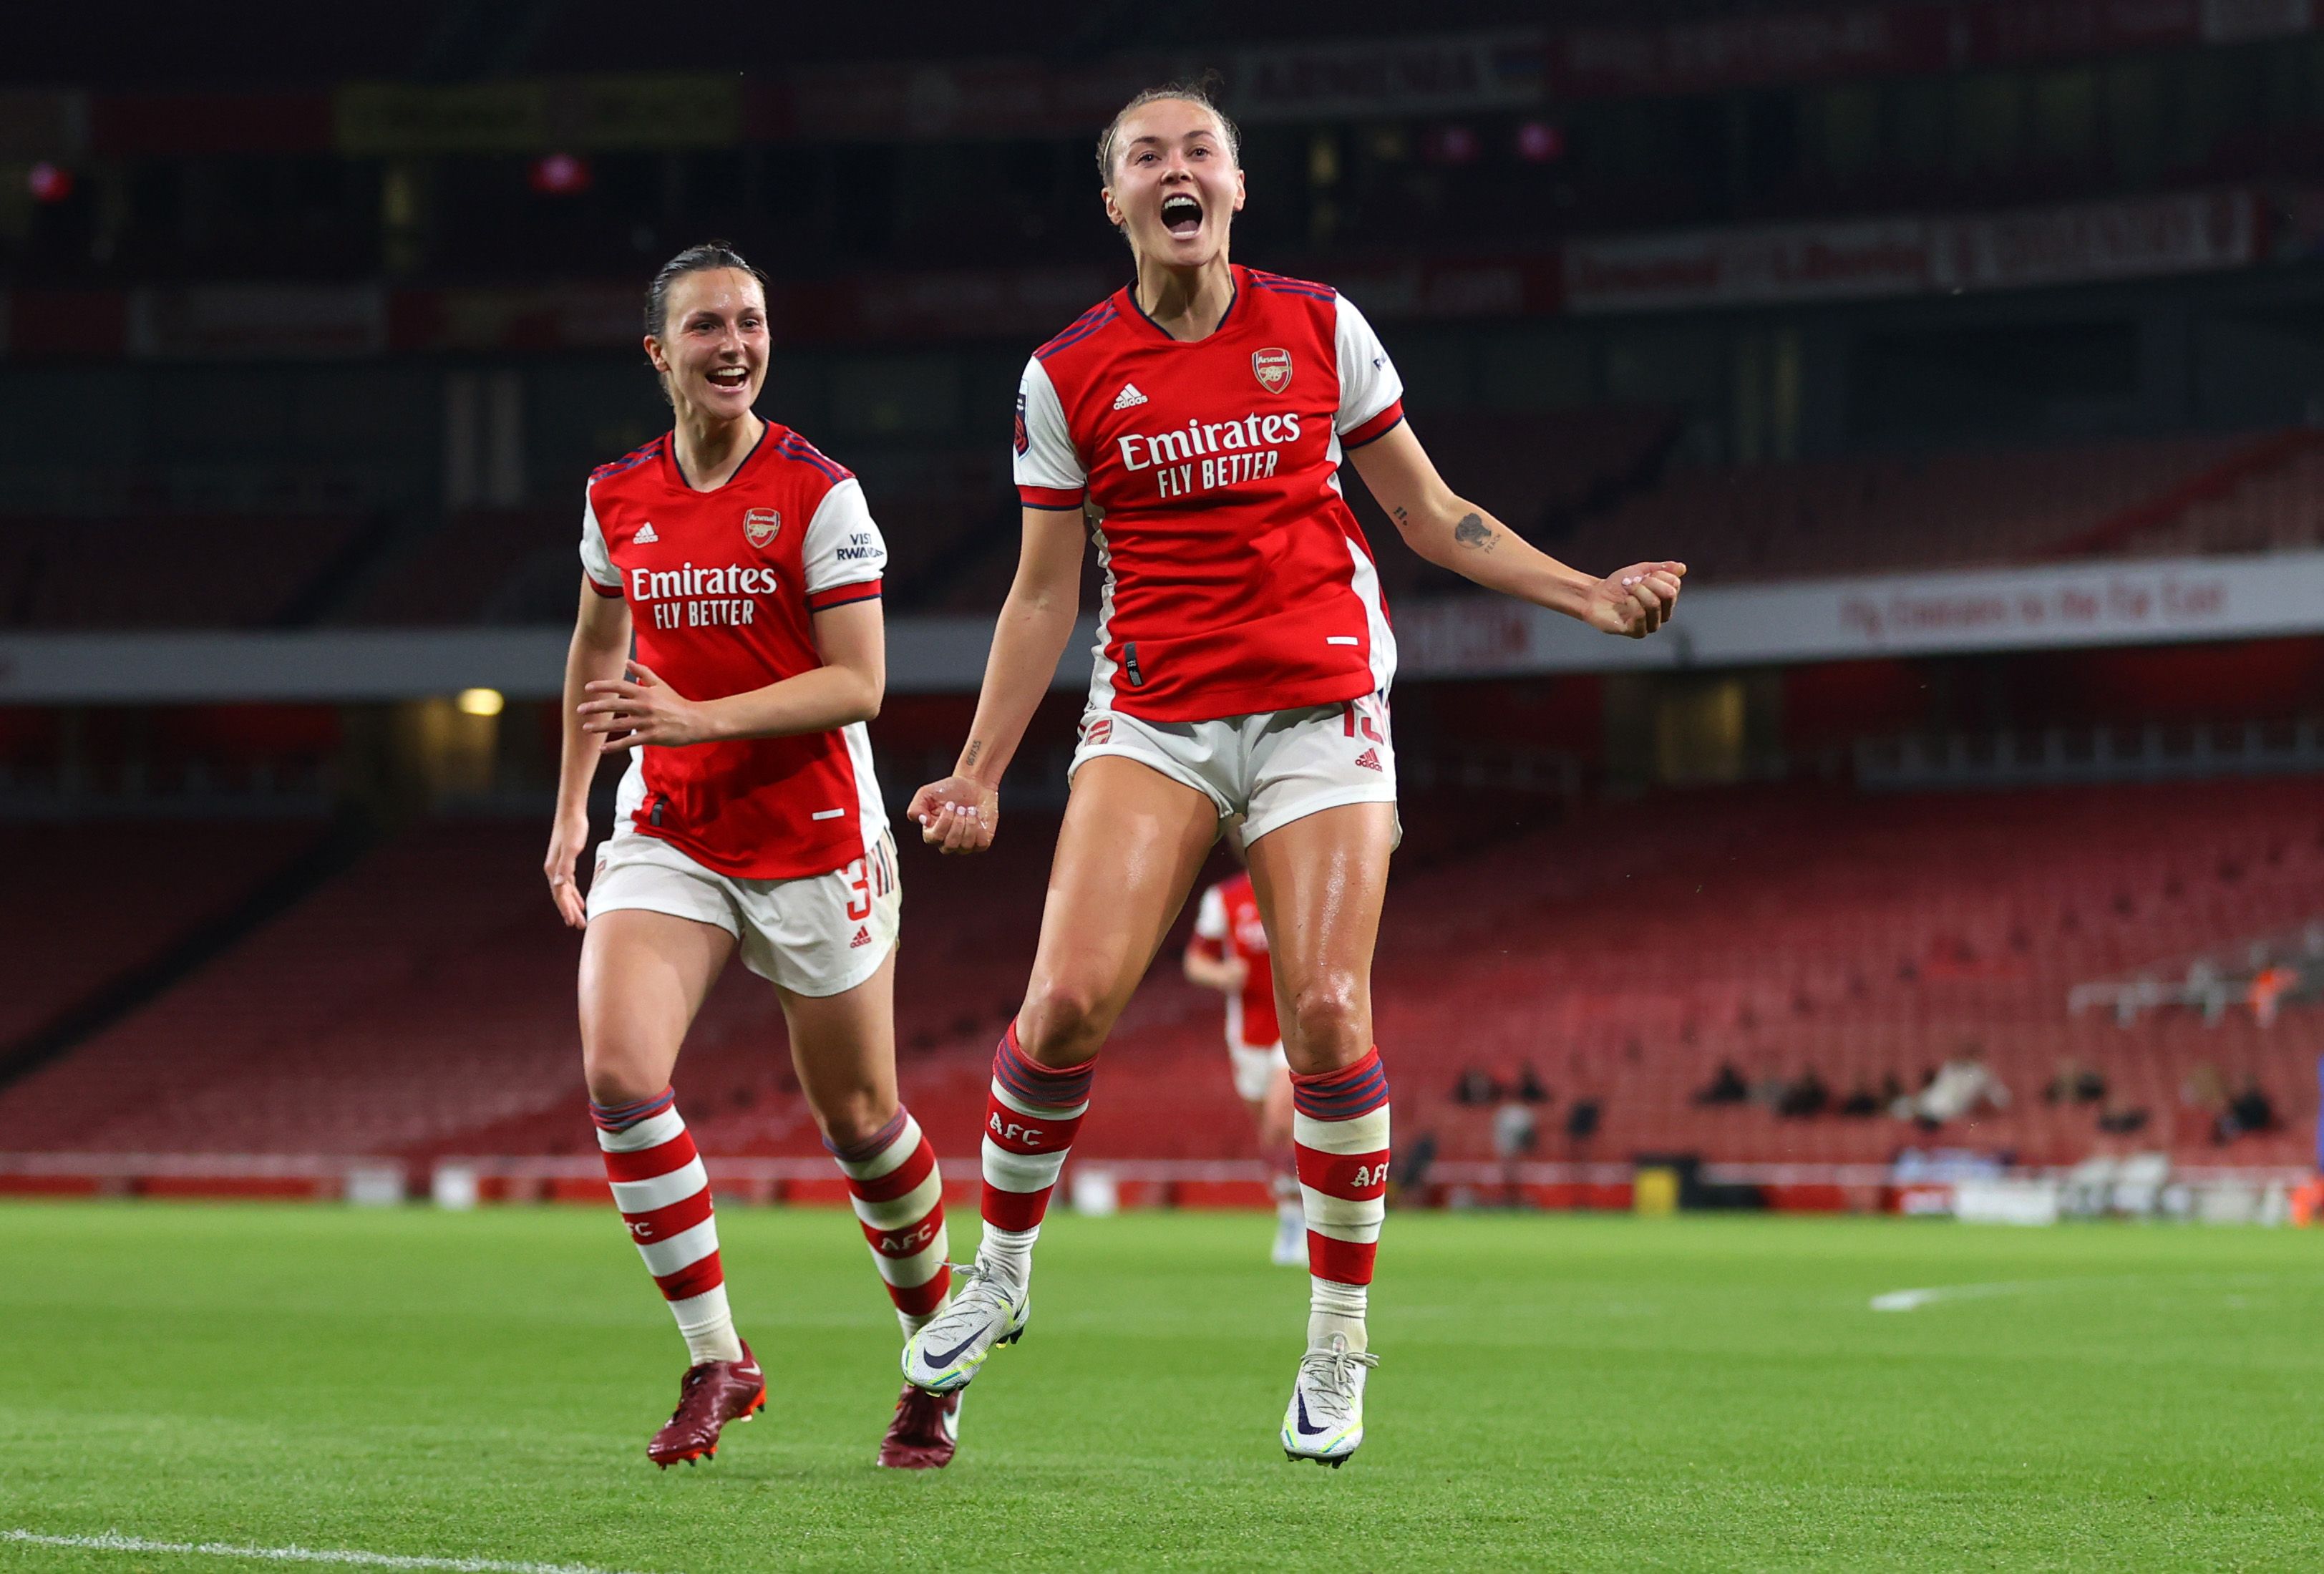 Arsenal Women's Caitlin Foord